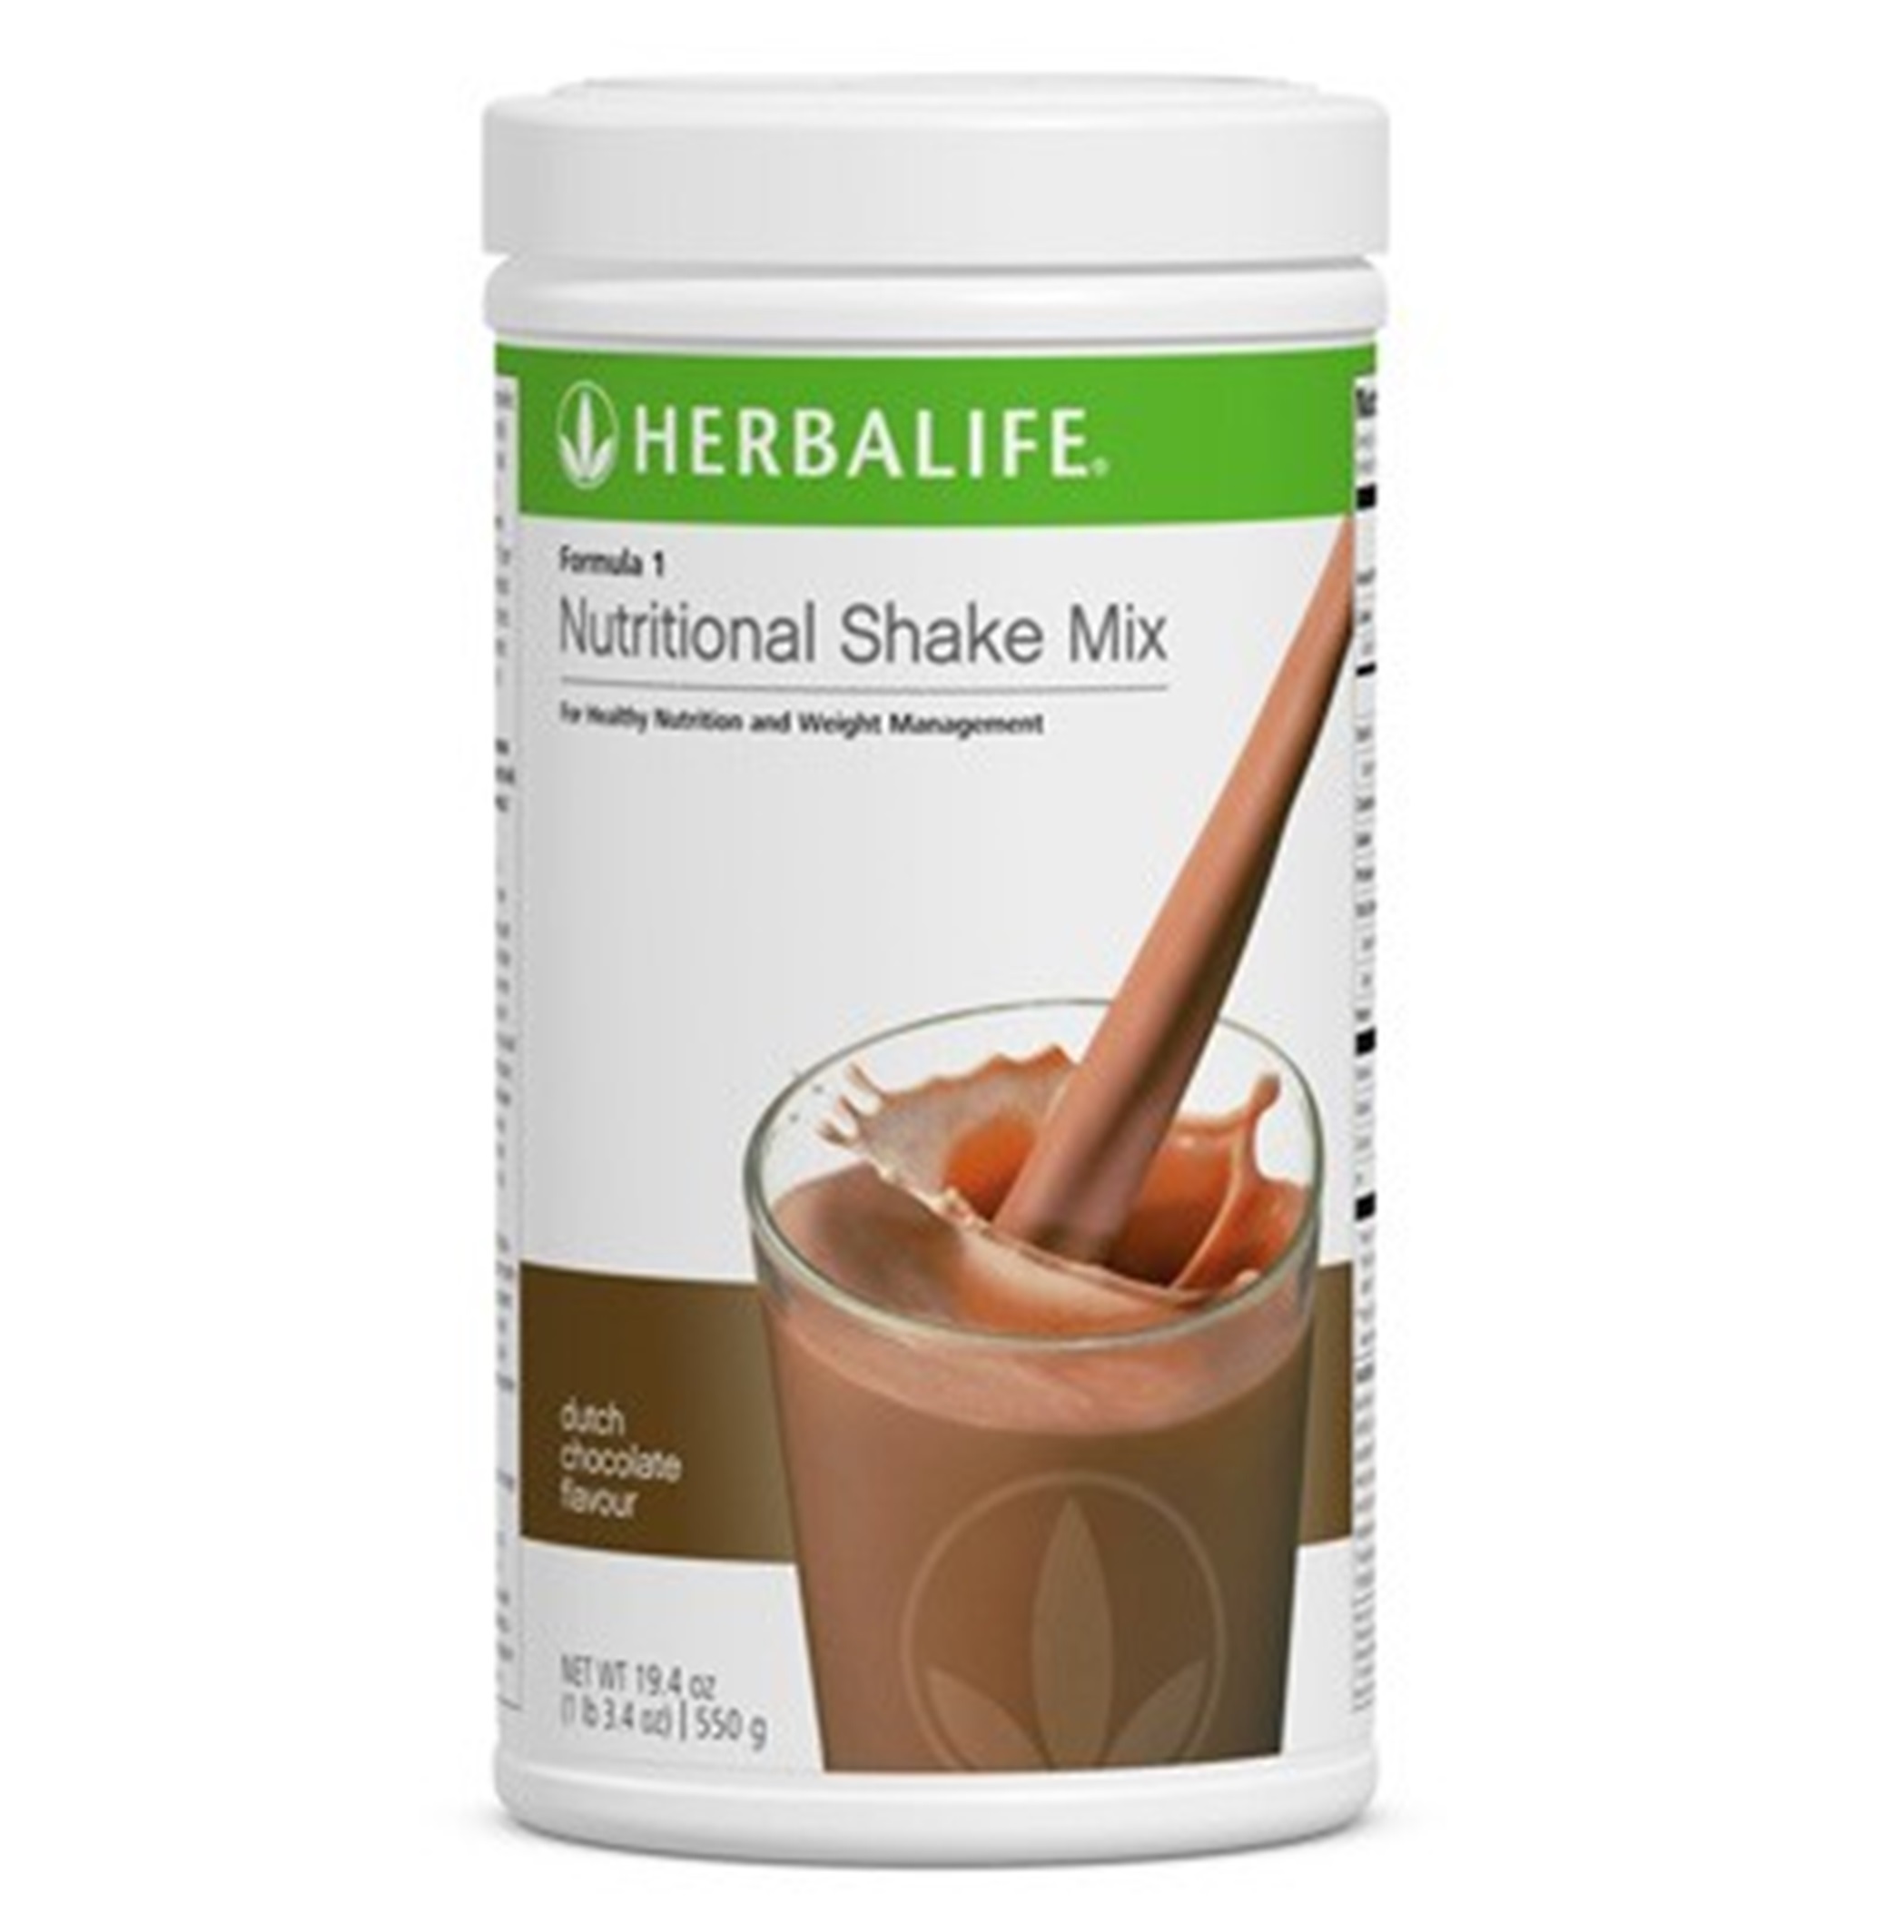 Buy Herbalife Formula 1 Chocolate Flavor Online